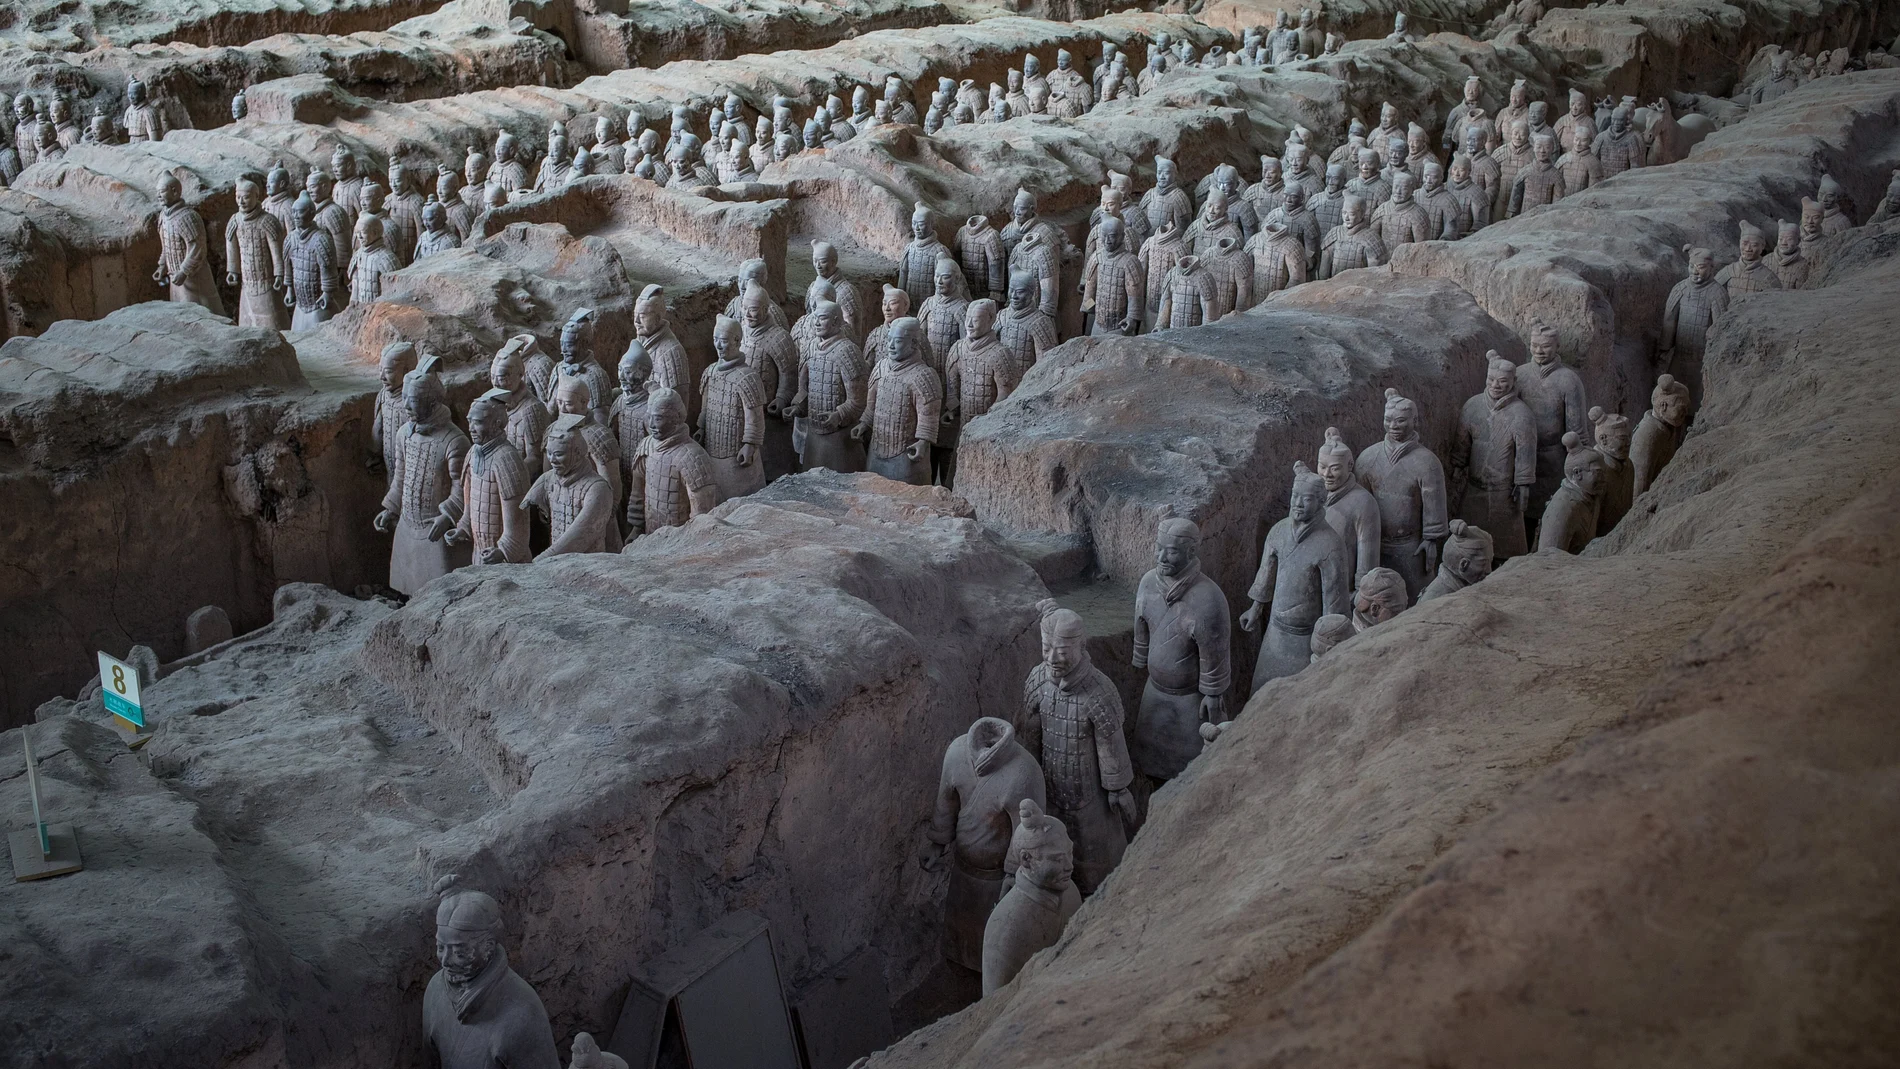 parte del conjunto de los Guerreros y Caballos de Terracota del Mausoleo de Qin Shihuang, situado en la ciudad china de Xian (China), un hallazgo formado por miles de estatuas que simbólicamente protegen la tumba del Primer Emperador, Qin Shihuang, quien gobernó entre los años 221 y 210 antes de nuestra era. 